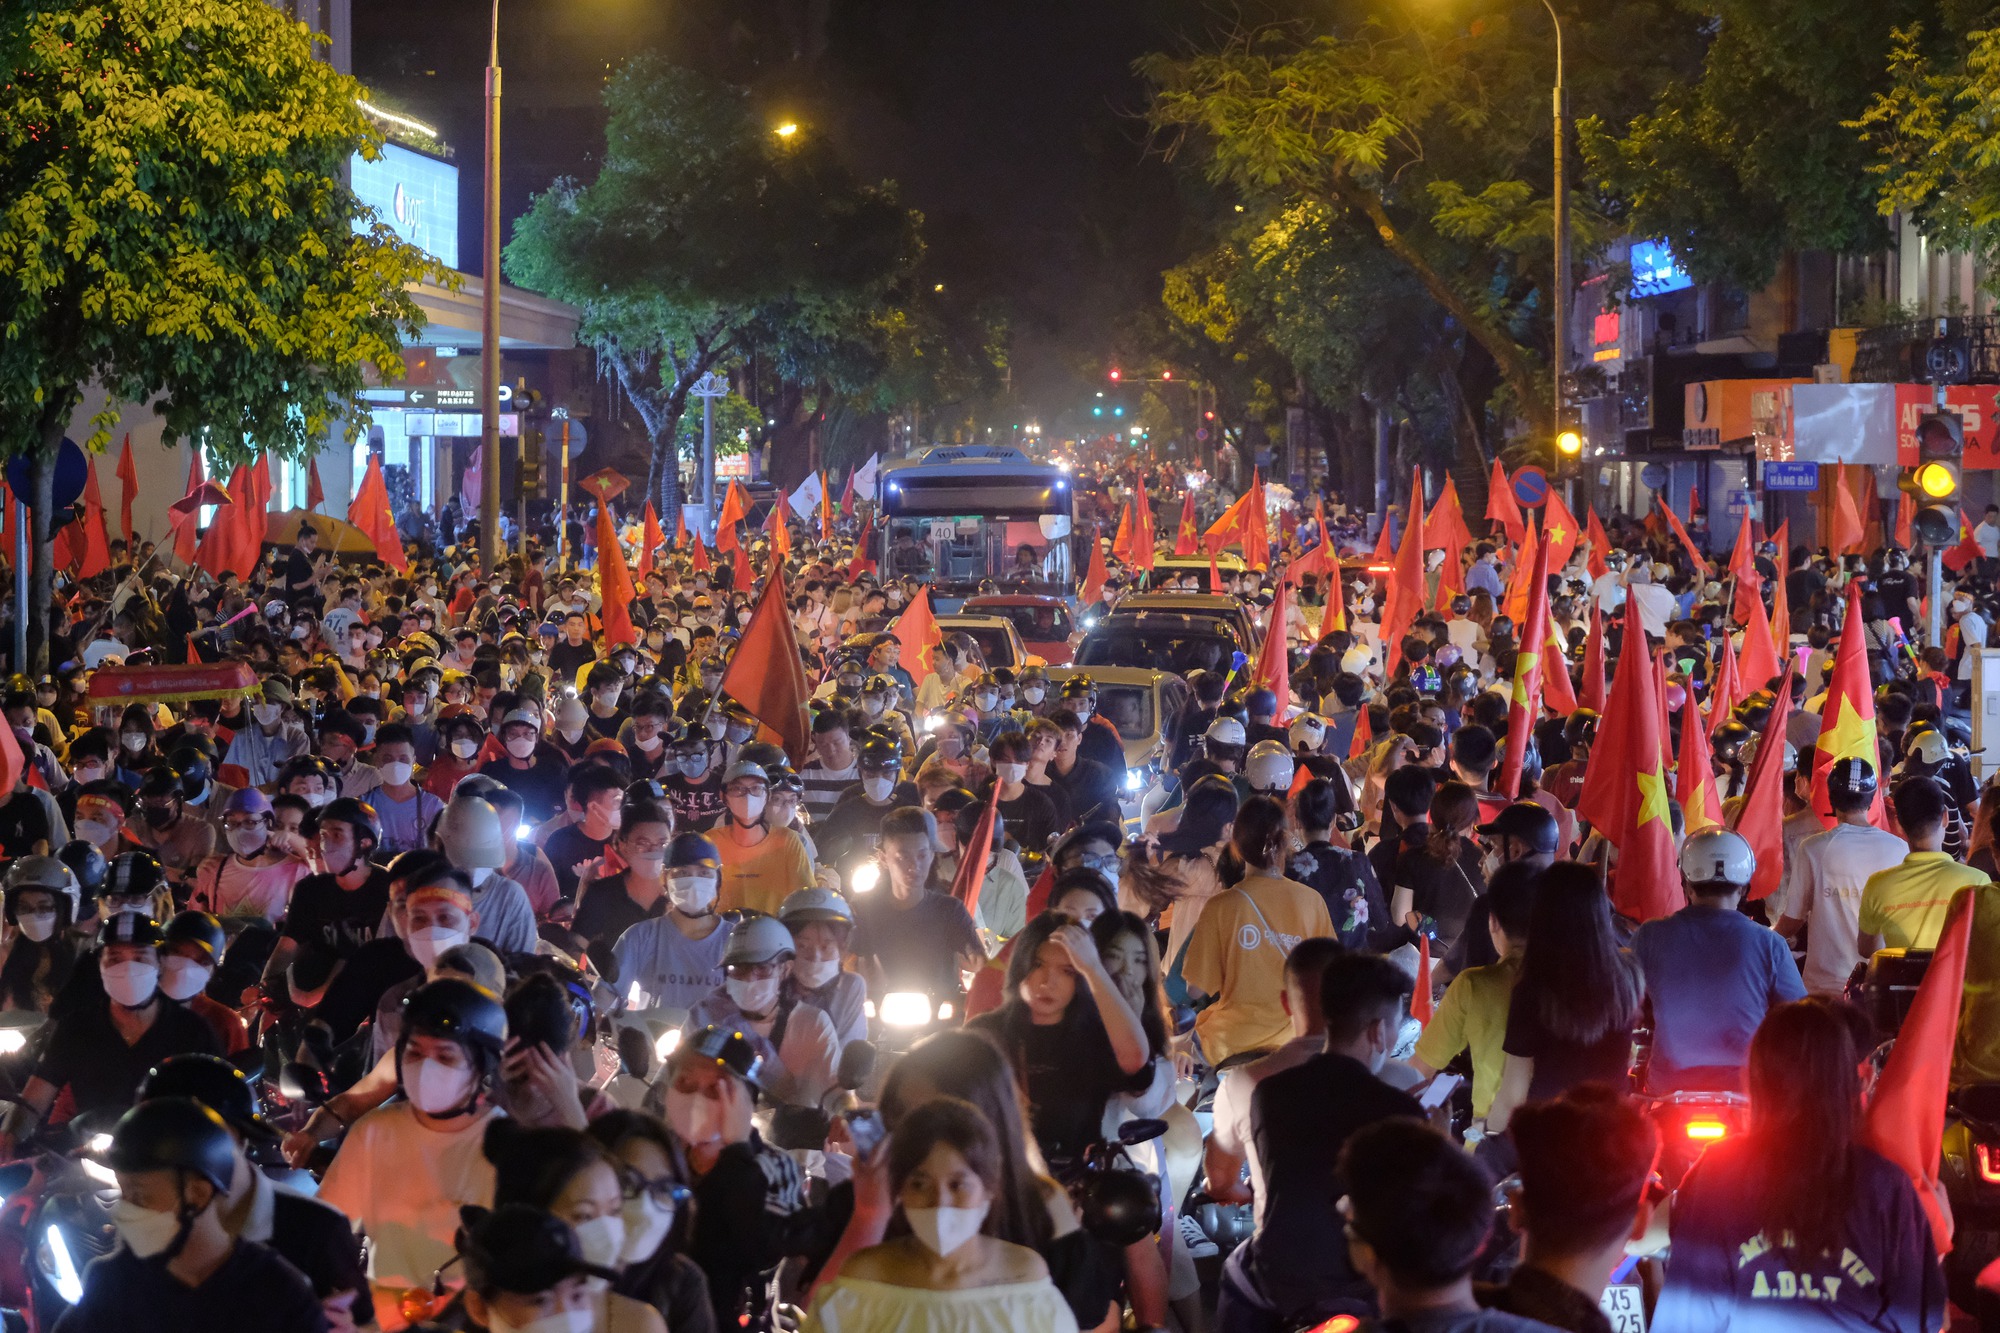 Đêm U23 Việt Nam giành HCV SEA Games trả món nợ với người Thái, người dân cả nước xuống đường nhuộm đỏ mọi tuyến phố - Ảnh 8.